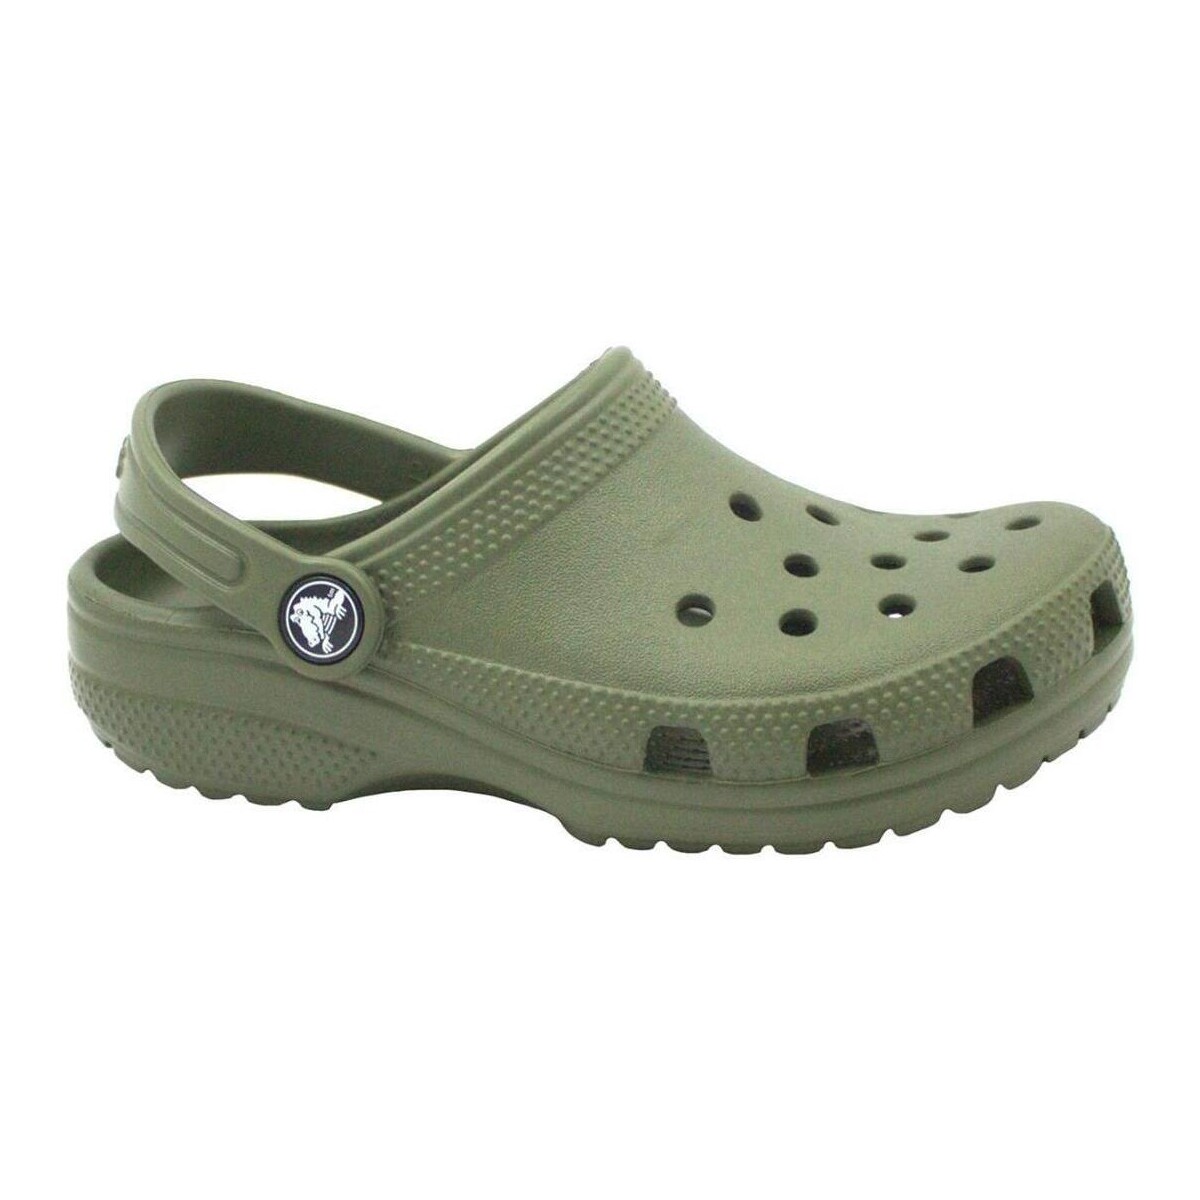 Schuhe Kinder Pantoffel Crocs CRO-CCC-206991-309 Grün